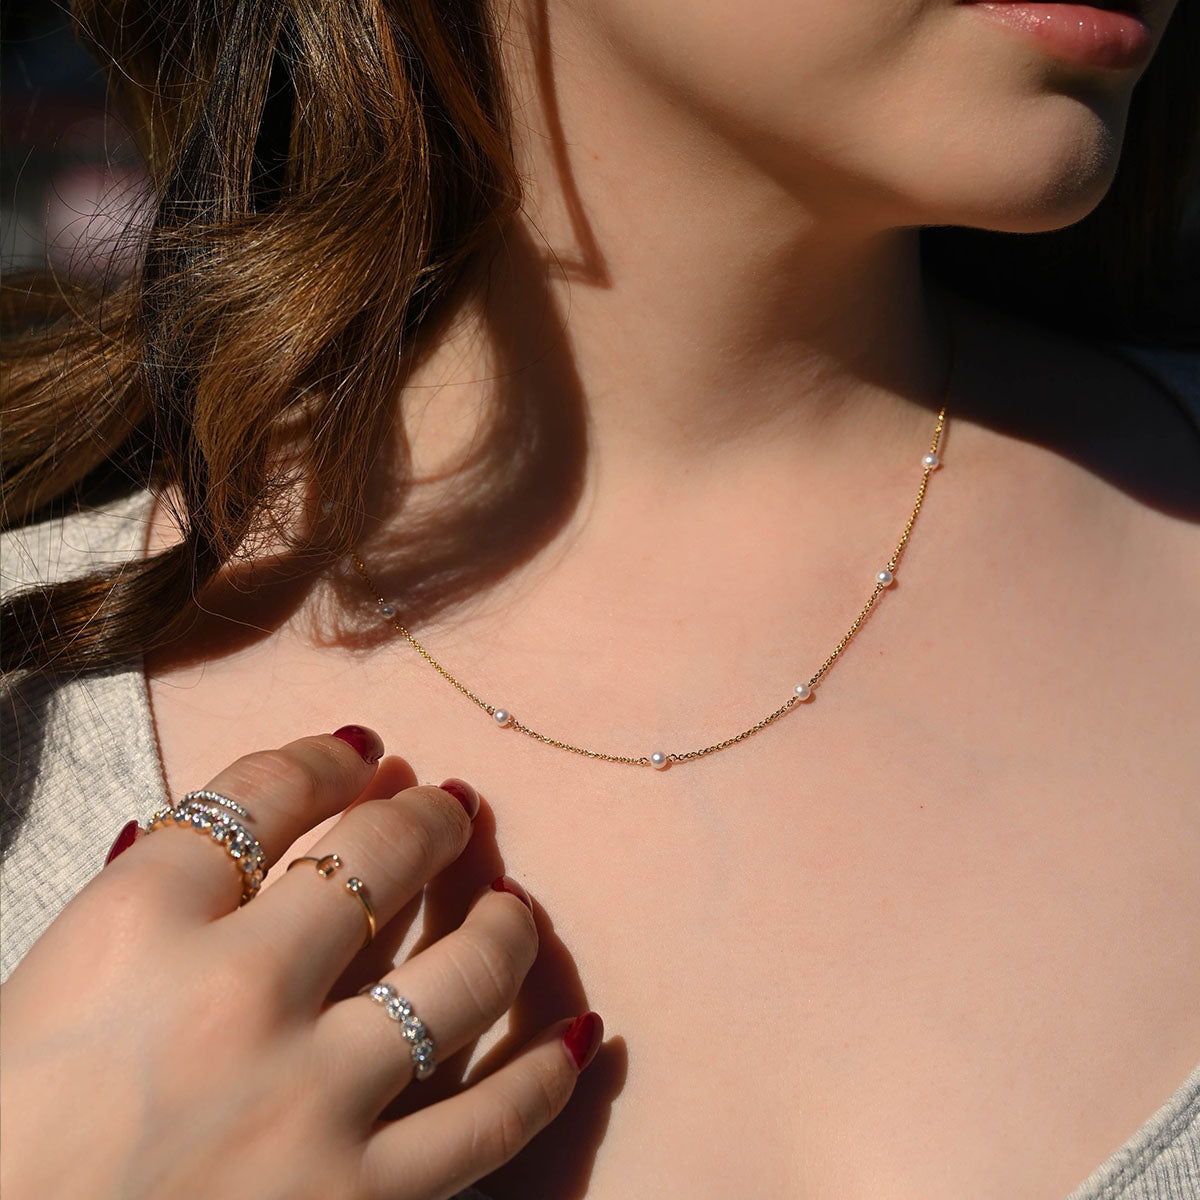 Pearl Station Necklace - Happy Jewelers Fine Jewelry Lifetime Warranty